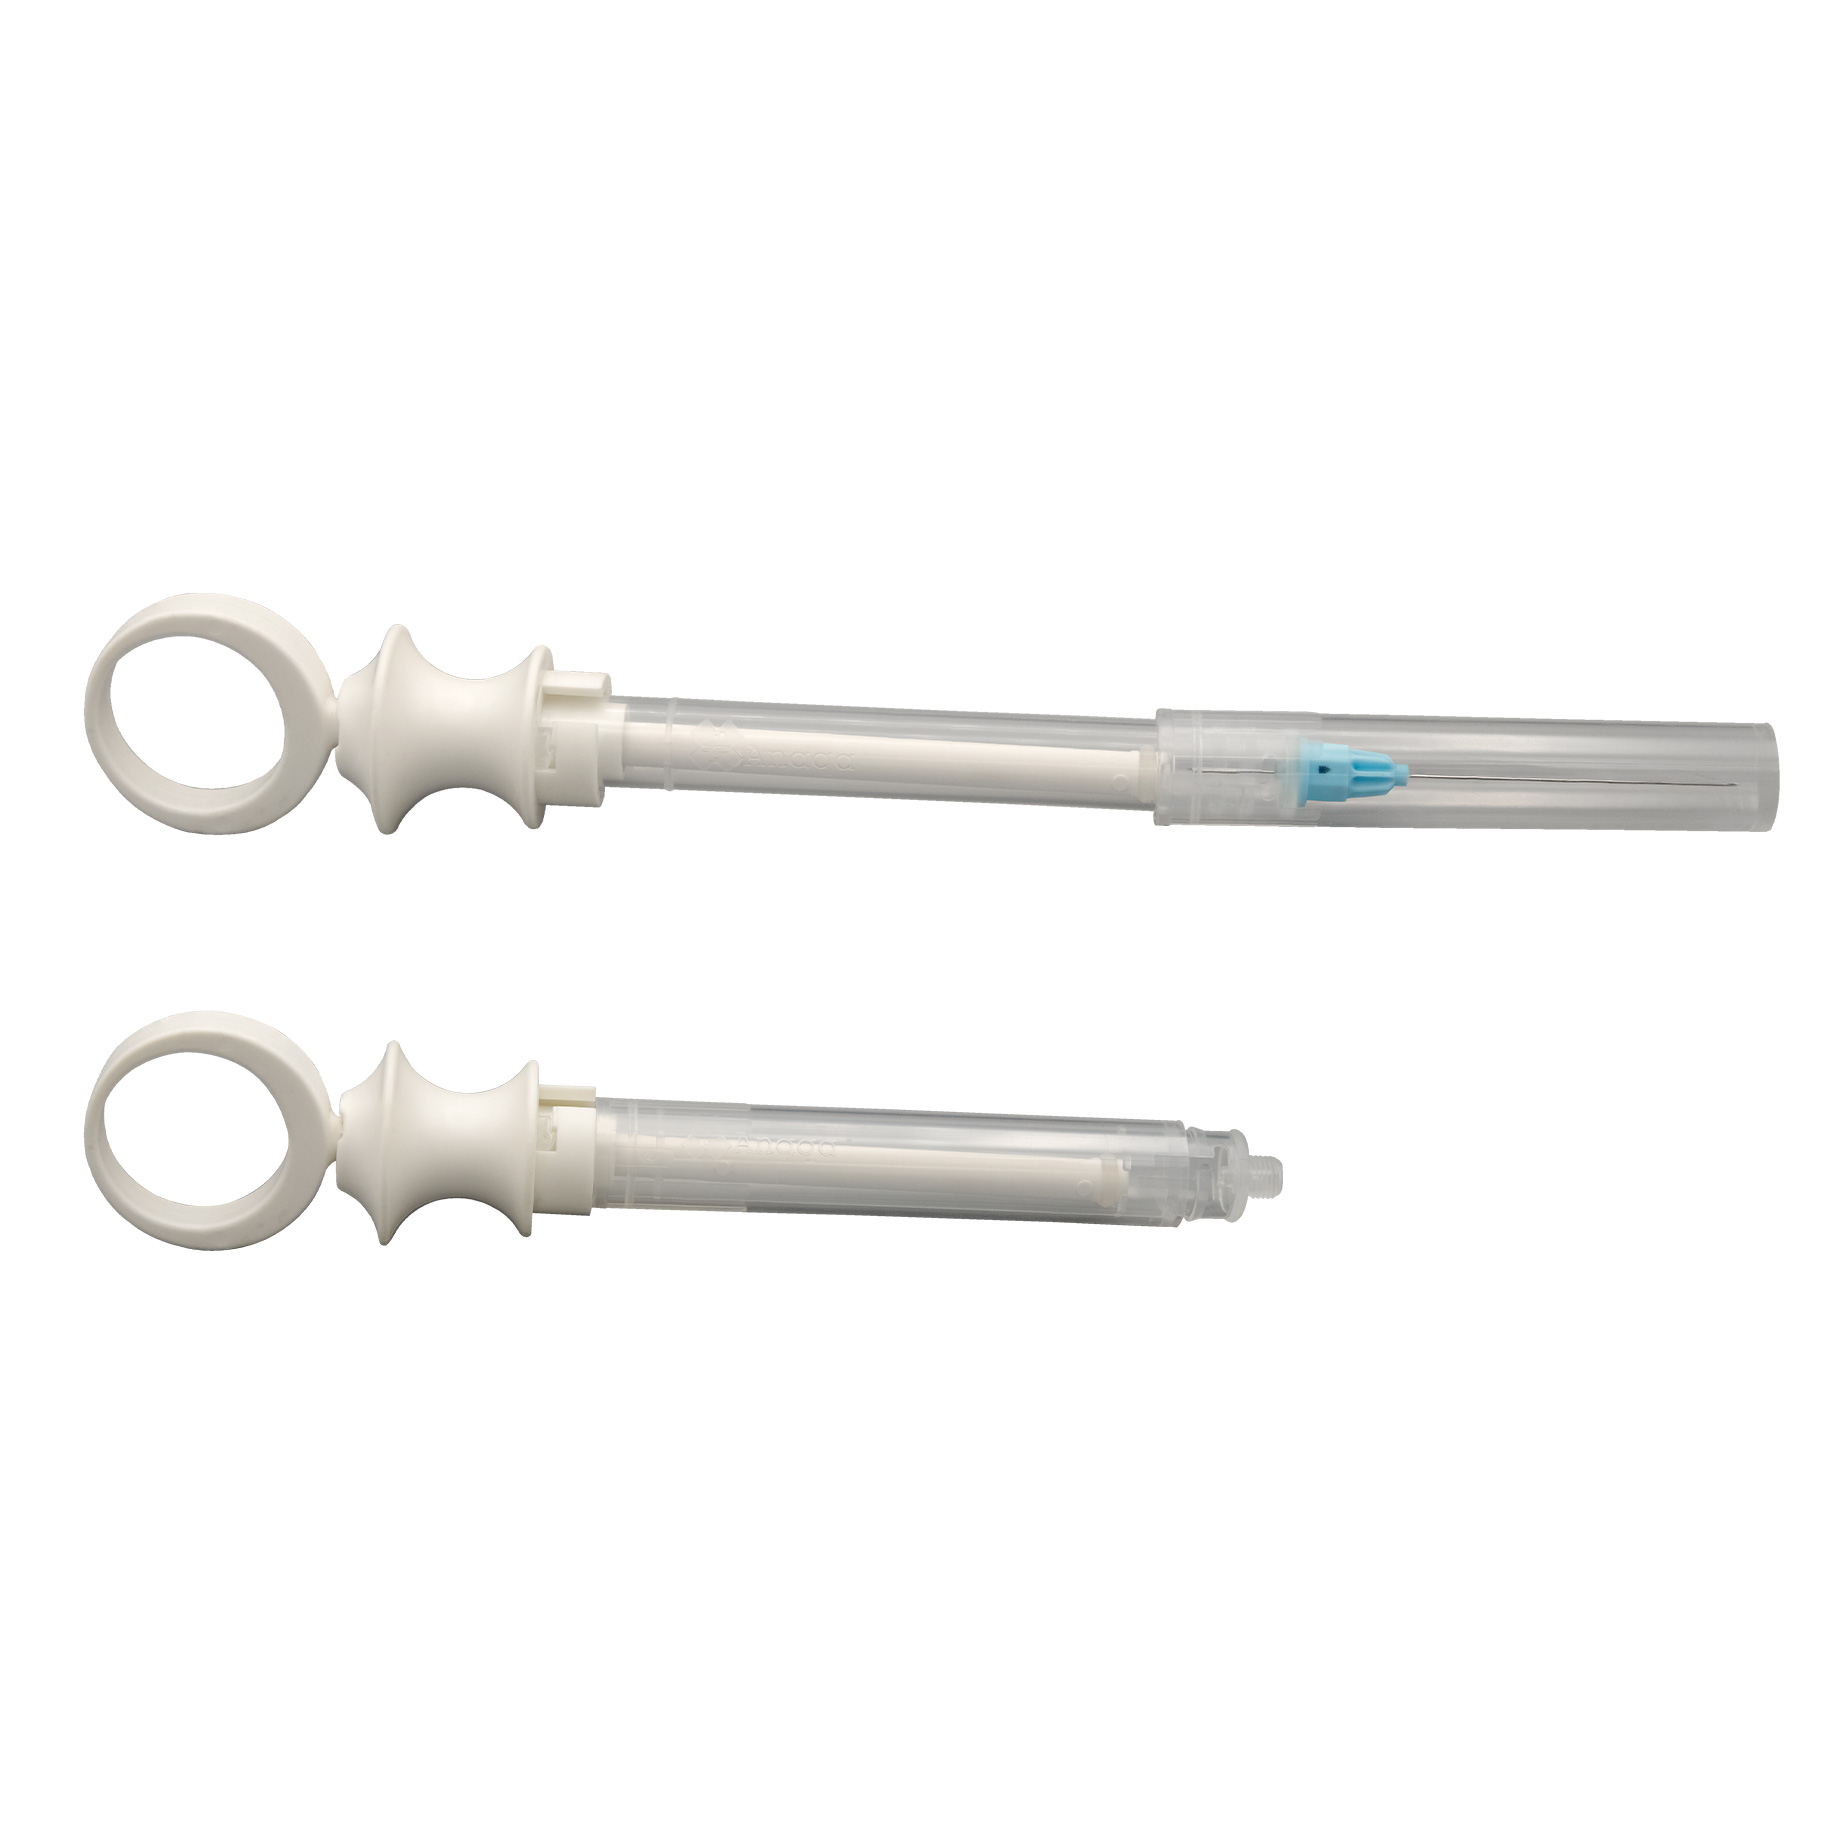 Anaqa Single-use Non-Sterile Dental Syringe 